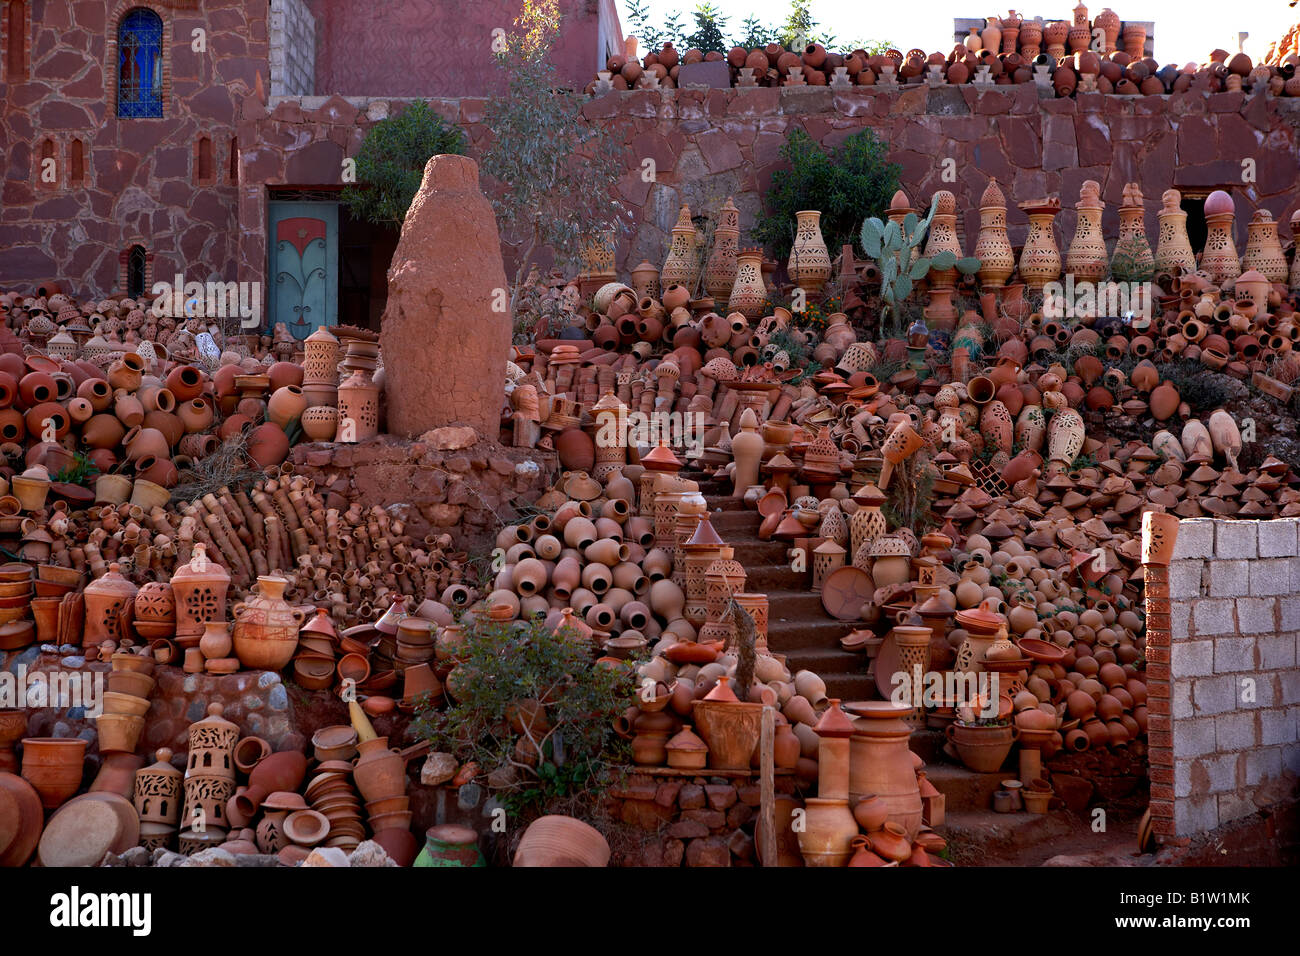 Unbemalte Keramik, Marrakesch Marokko Stockfoto